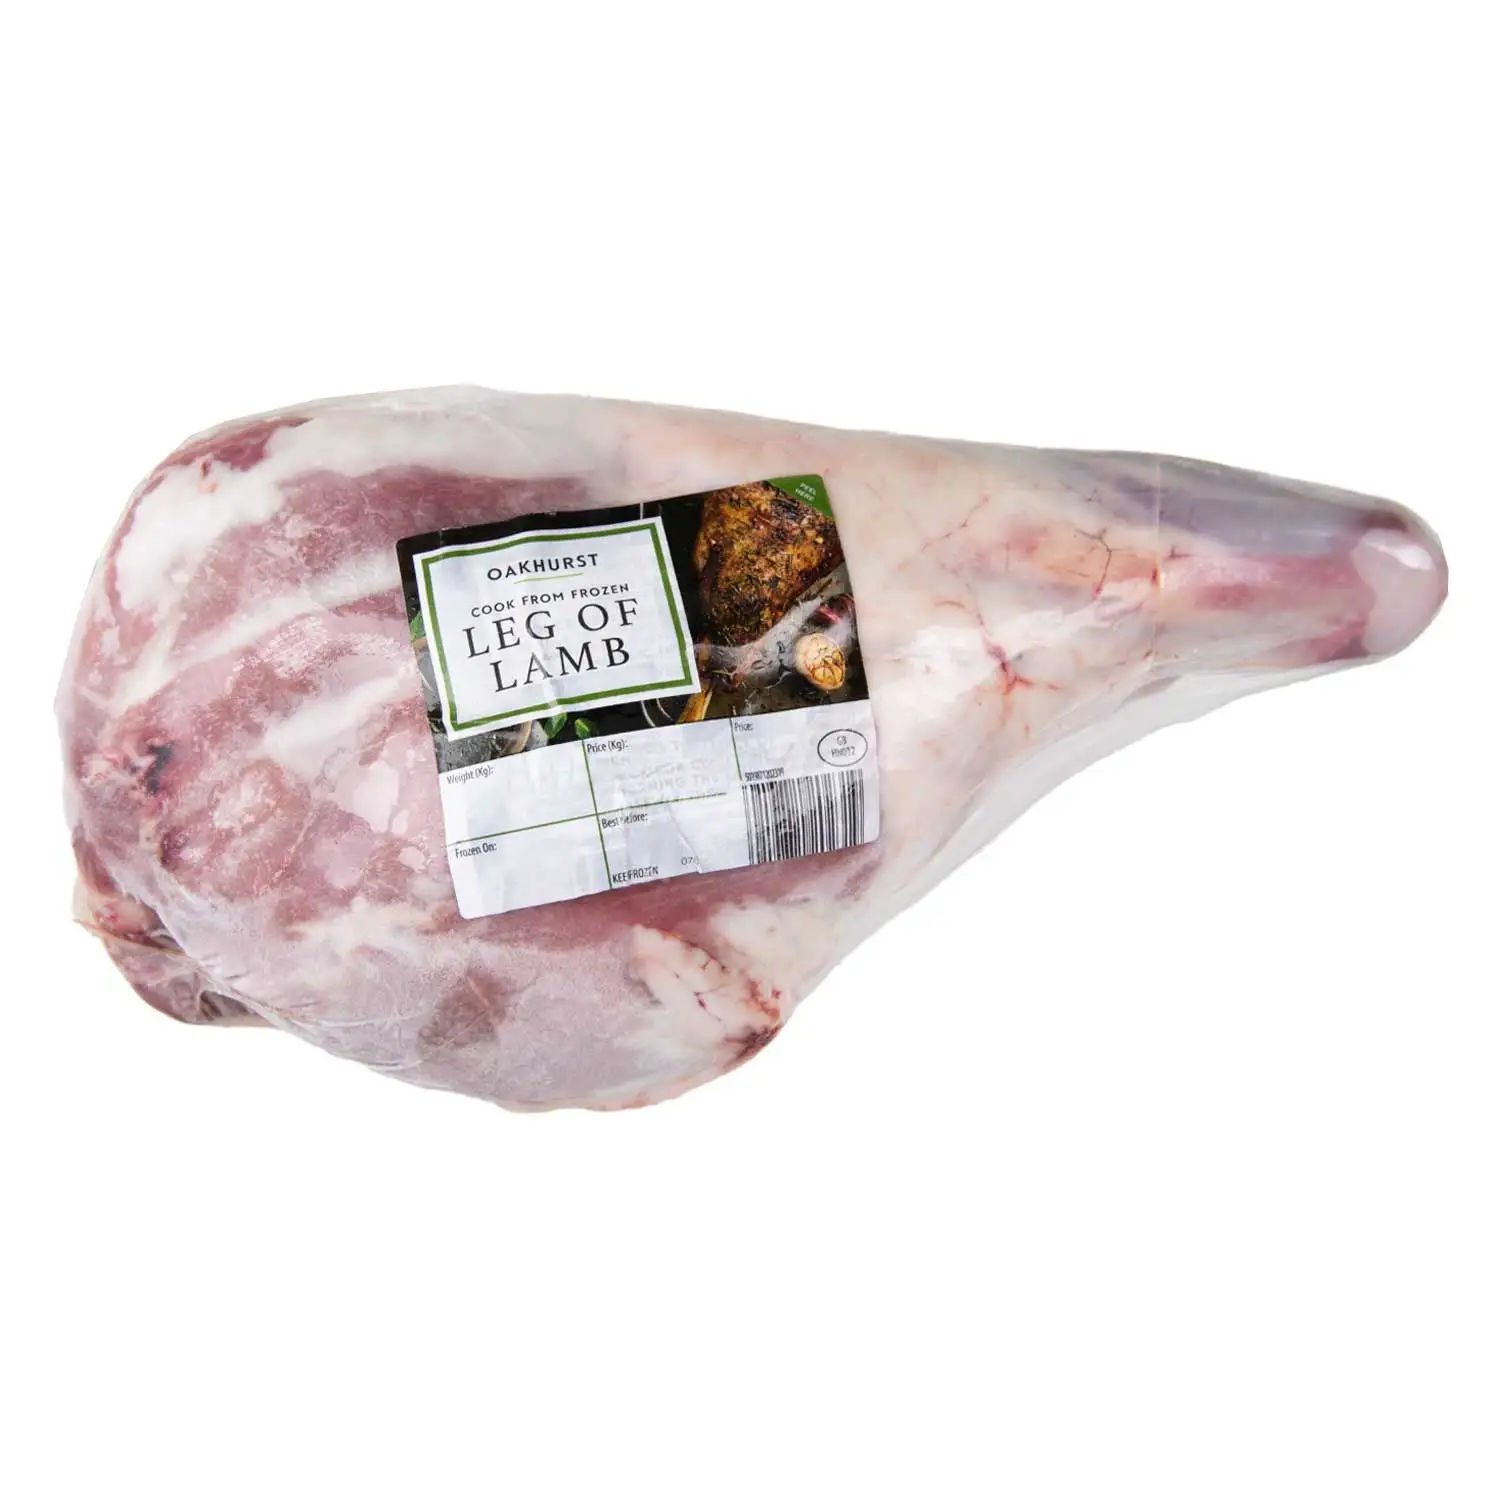 बिक्री के लिए शीर्ष गुणवत्ता ताजा जमे हुए भेड़ का मांस हलाल मटन